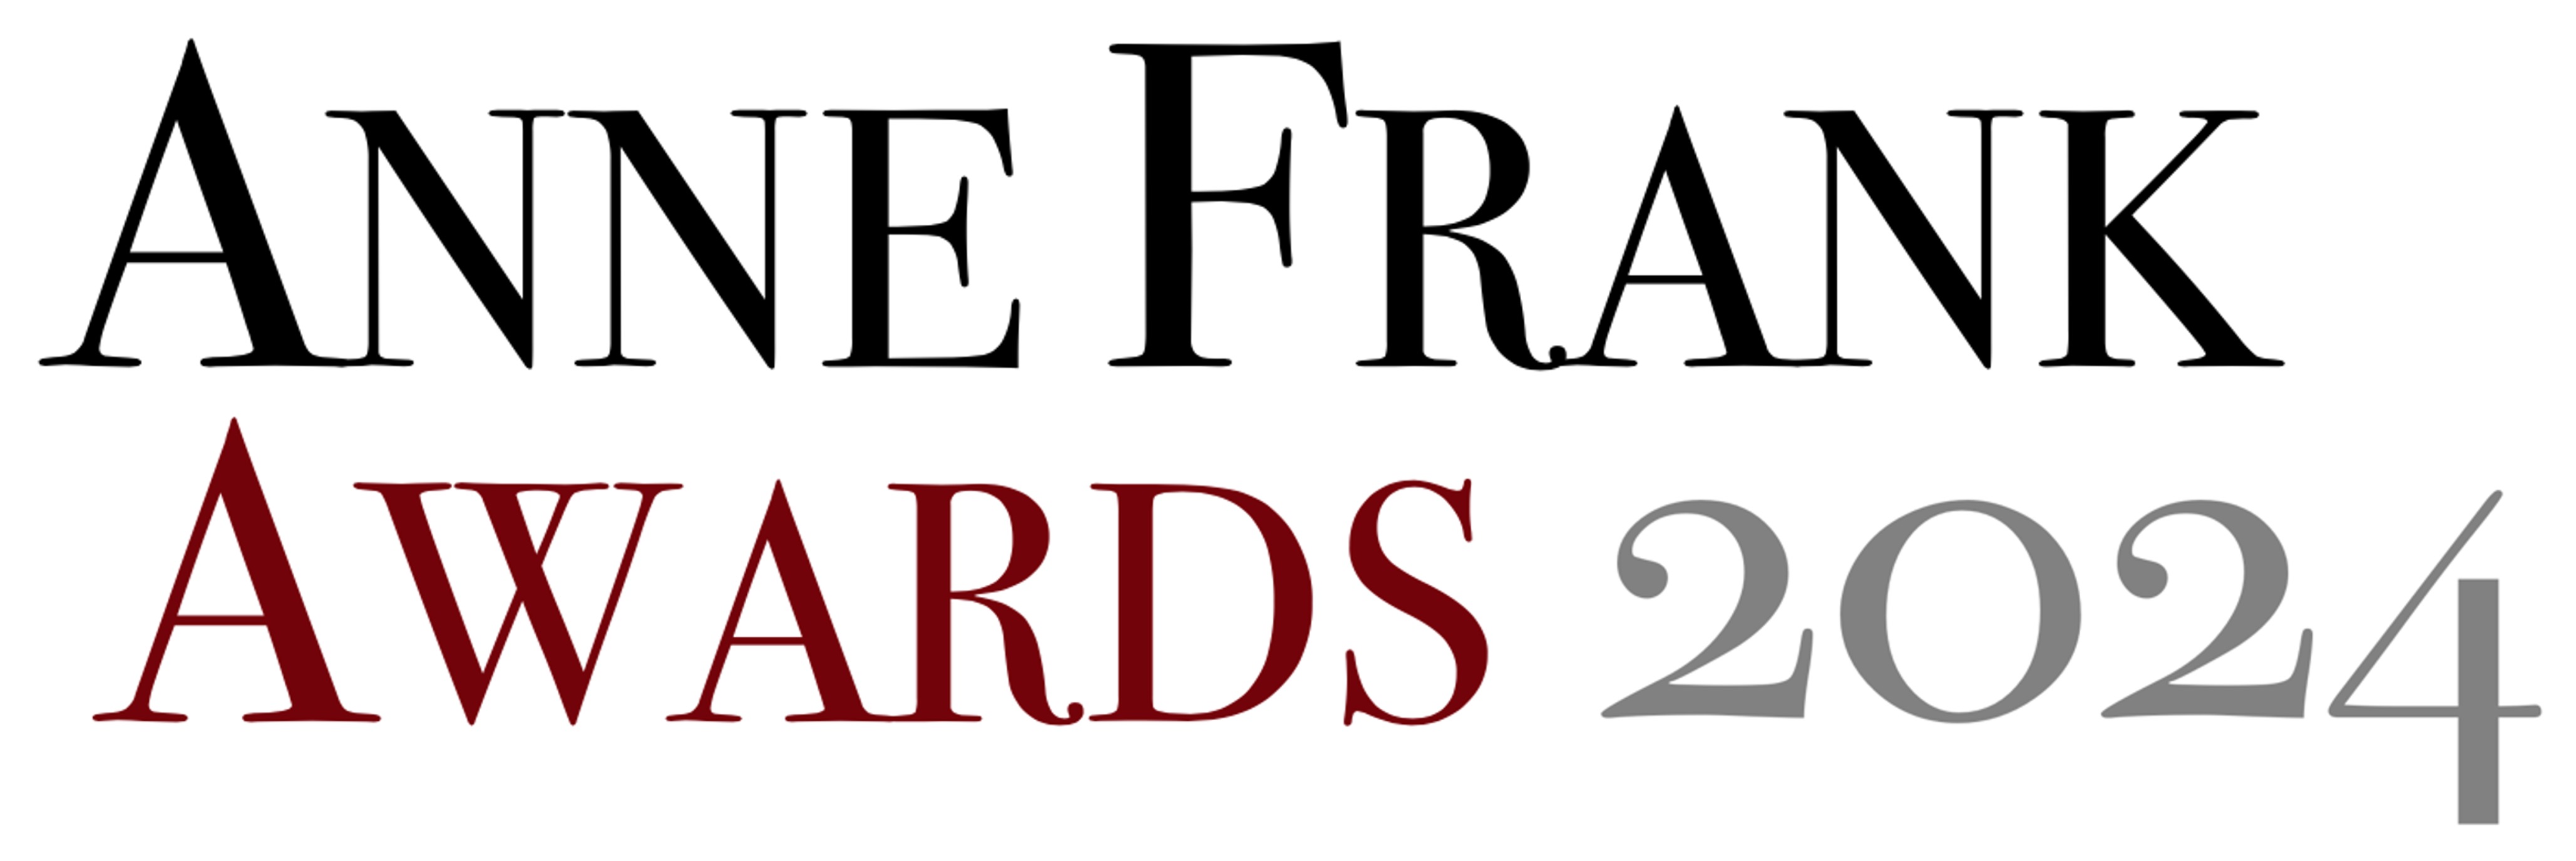 Anne Frank Awards logo